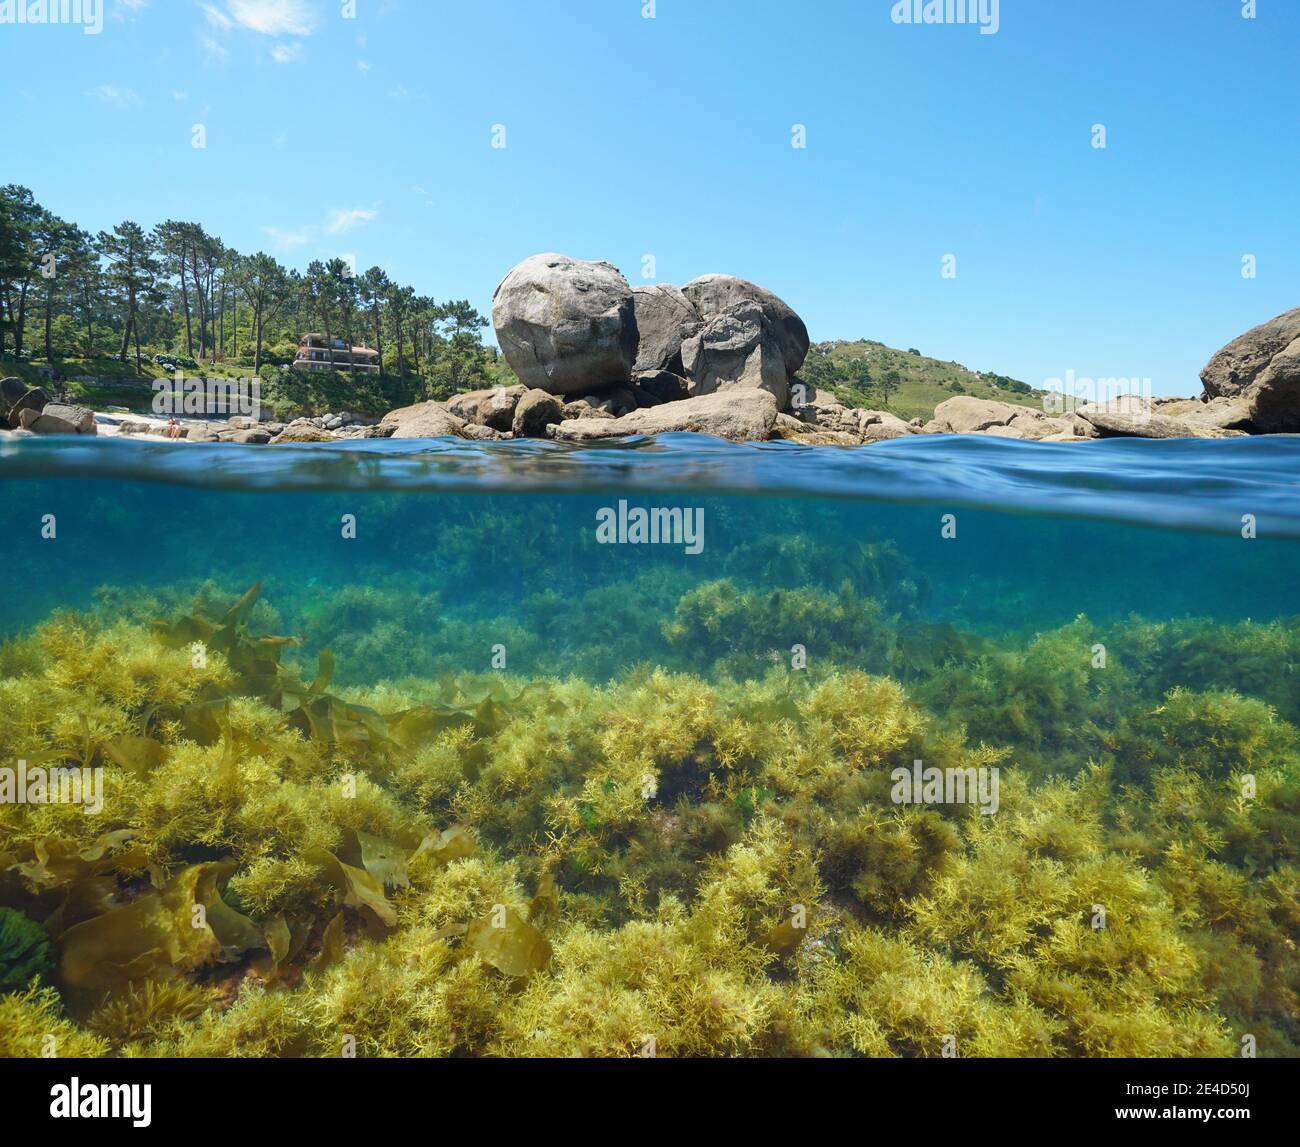 Spagna costa atlantica in Galizia, rocce e alghe sott'acqua nell'oceano, vista su e sotto la superficie dell'acqua, Bueu, provincia di Pontevedra Foto Stock